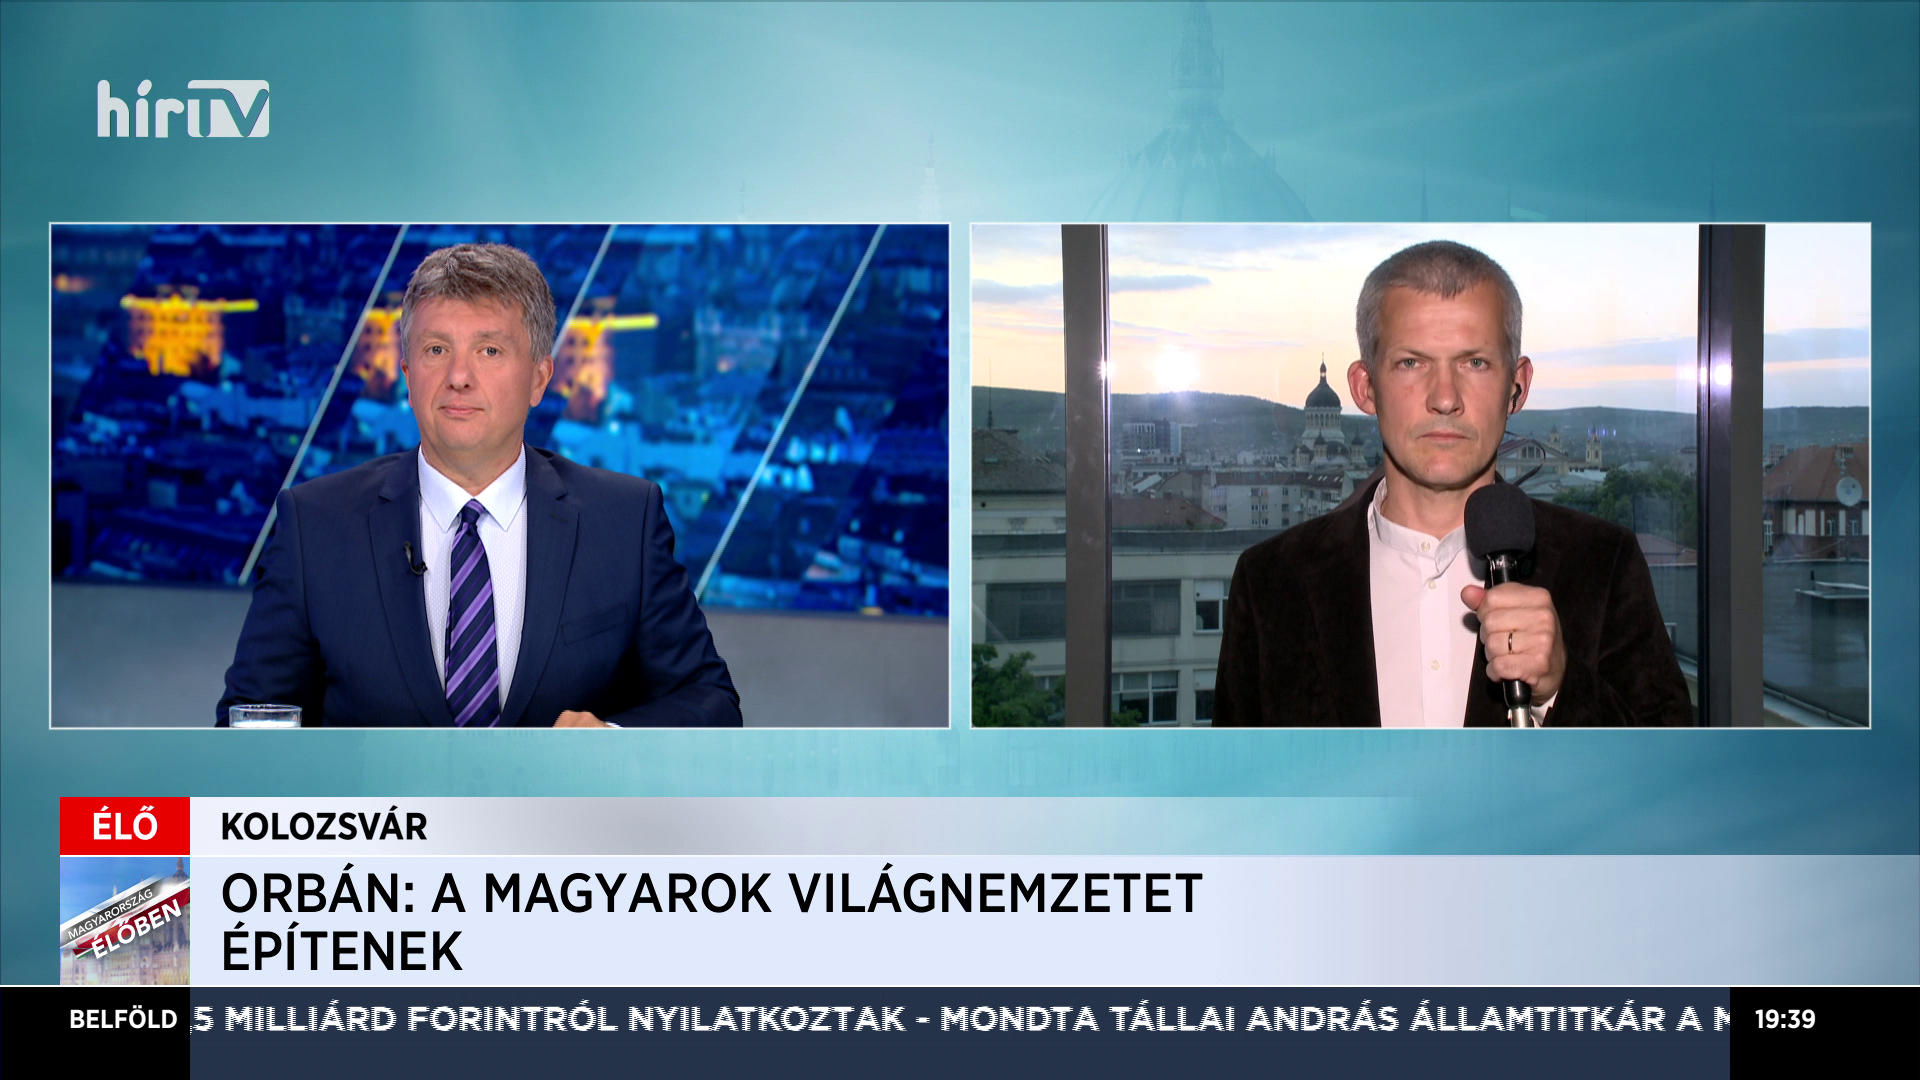 Tonk Márton: Az erdélyi őshonos magyarság megtapasztalta, mit jelent a migráció